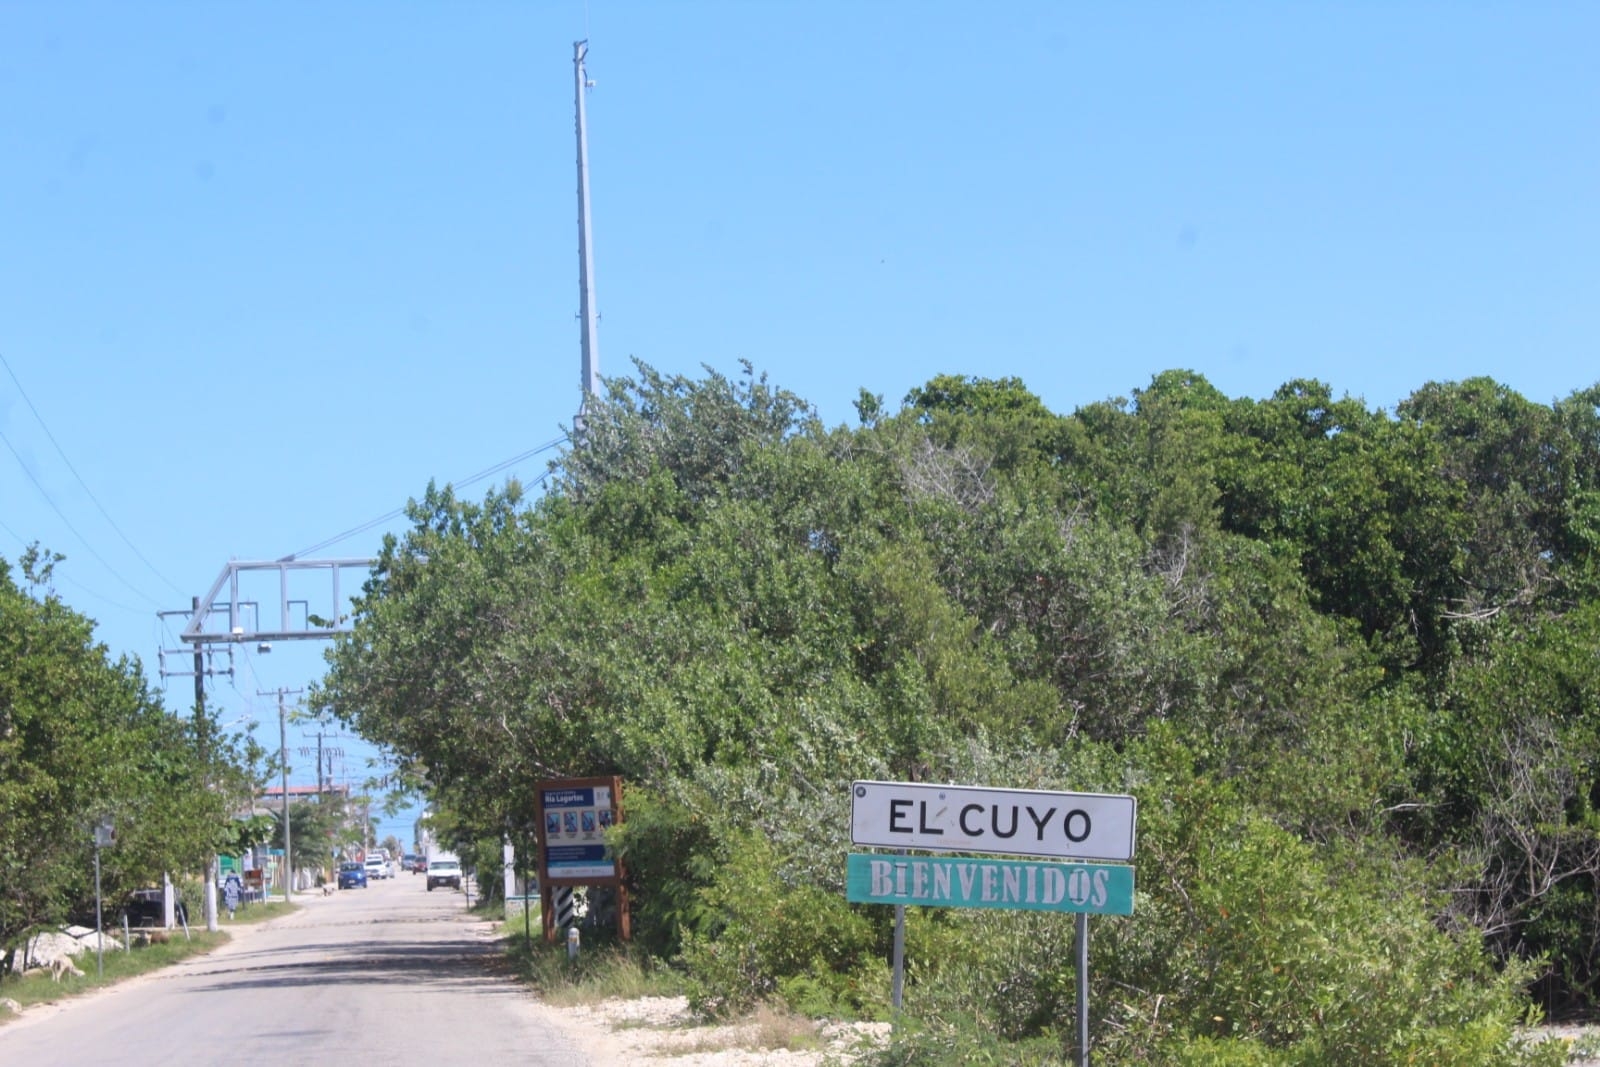 El Cuyo se sitúa al extremo Noreste de Yucatán y cuenta con una población de aproximadamente 3 mil personas